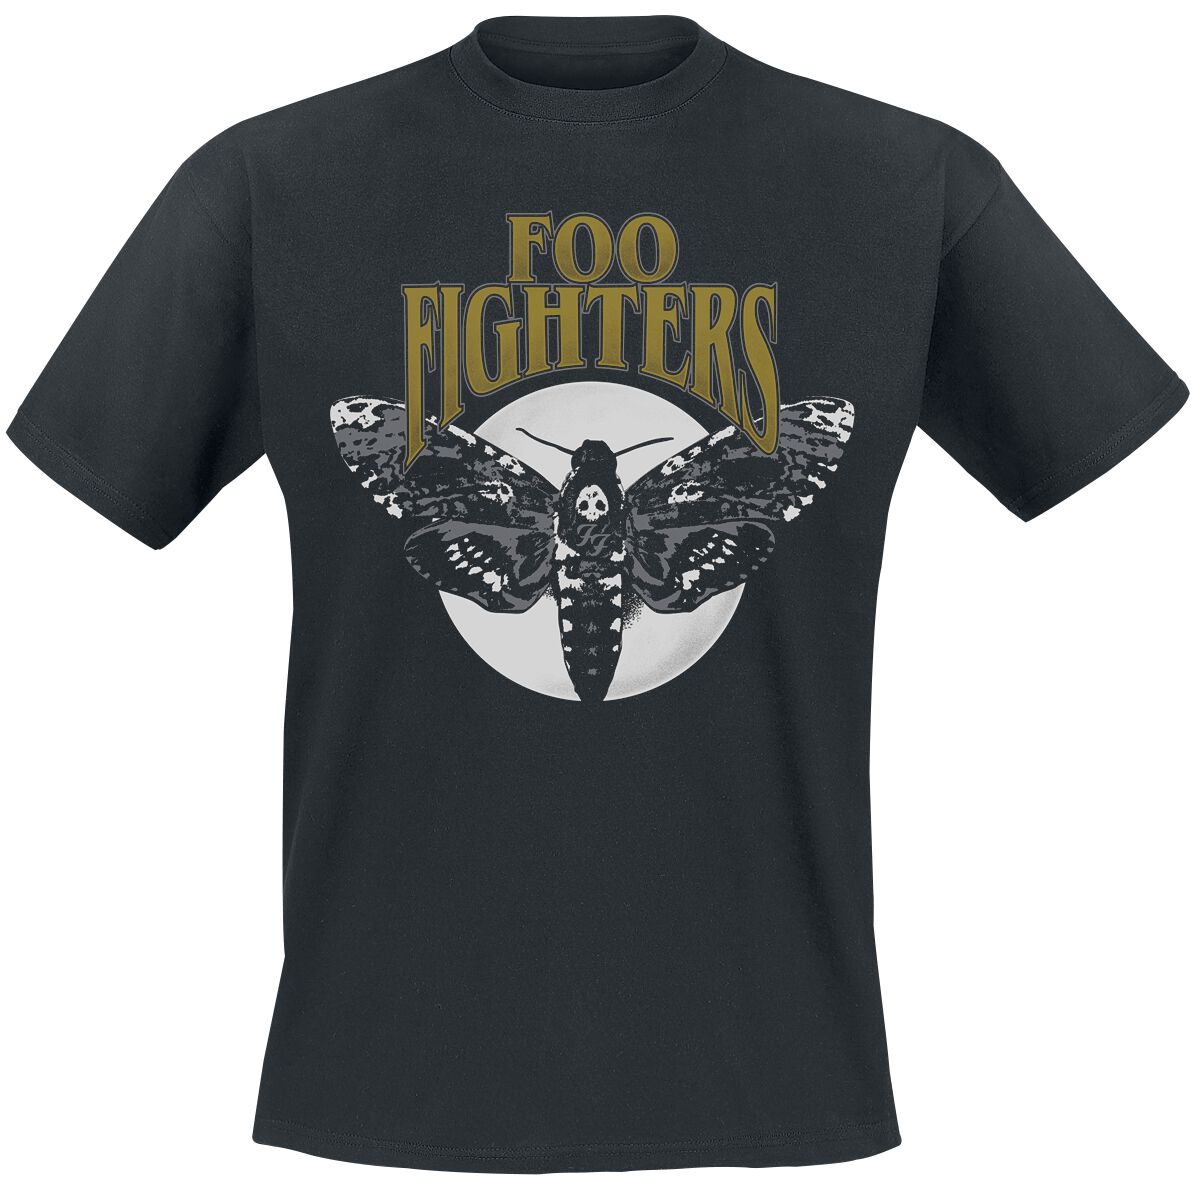 Foo Fighters T-Shirt - Hawk Moth - S bis XXL - für Männer - Größe S - schwarz  - Lizenziertes Merchandise!